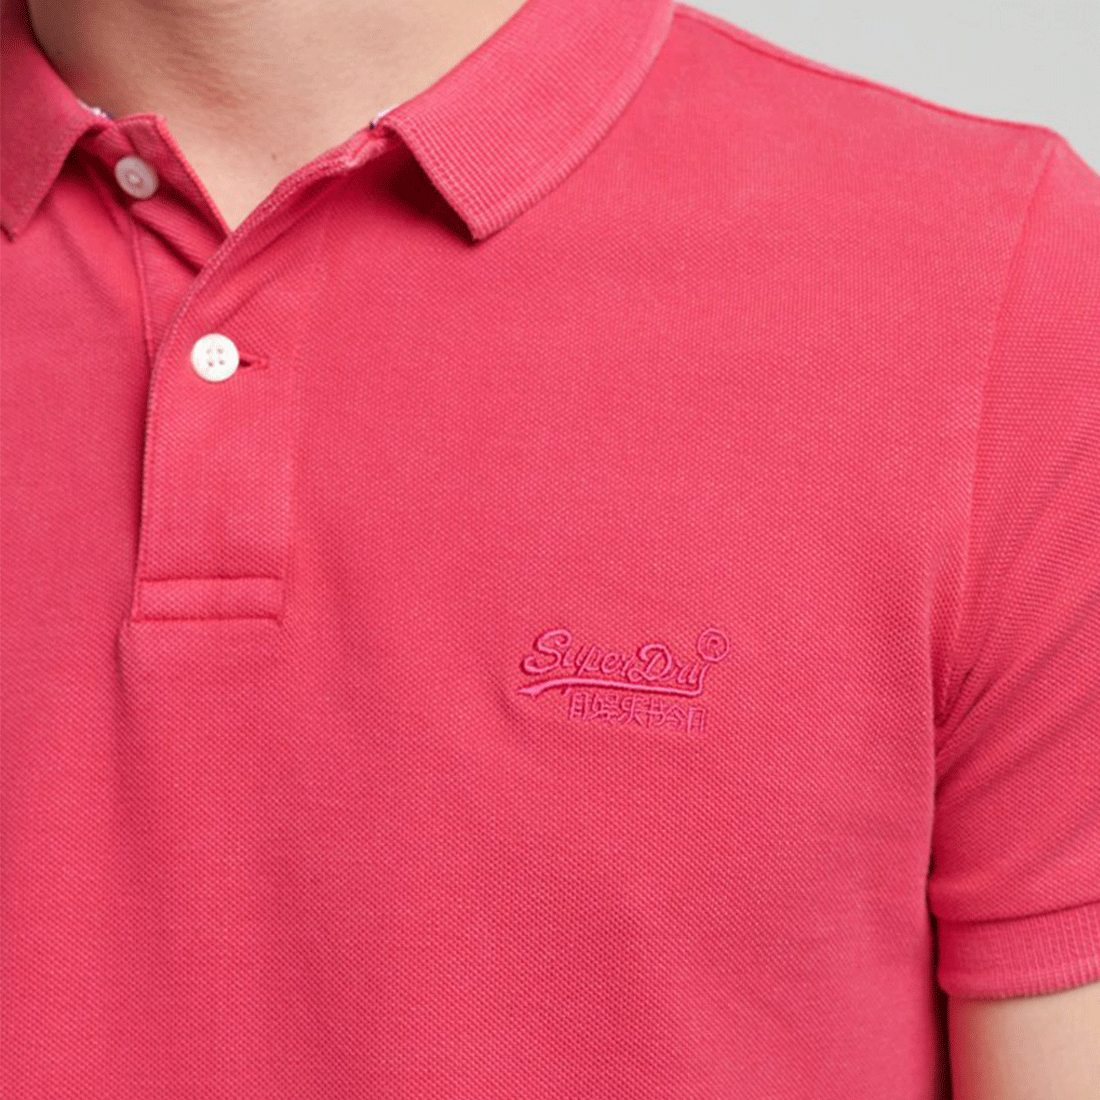 Superdry Short Sleeve Polo Shirt - Vintage Destroy - Pink